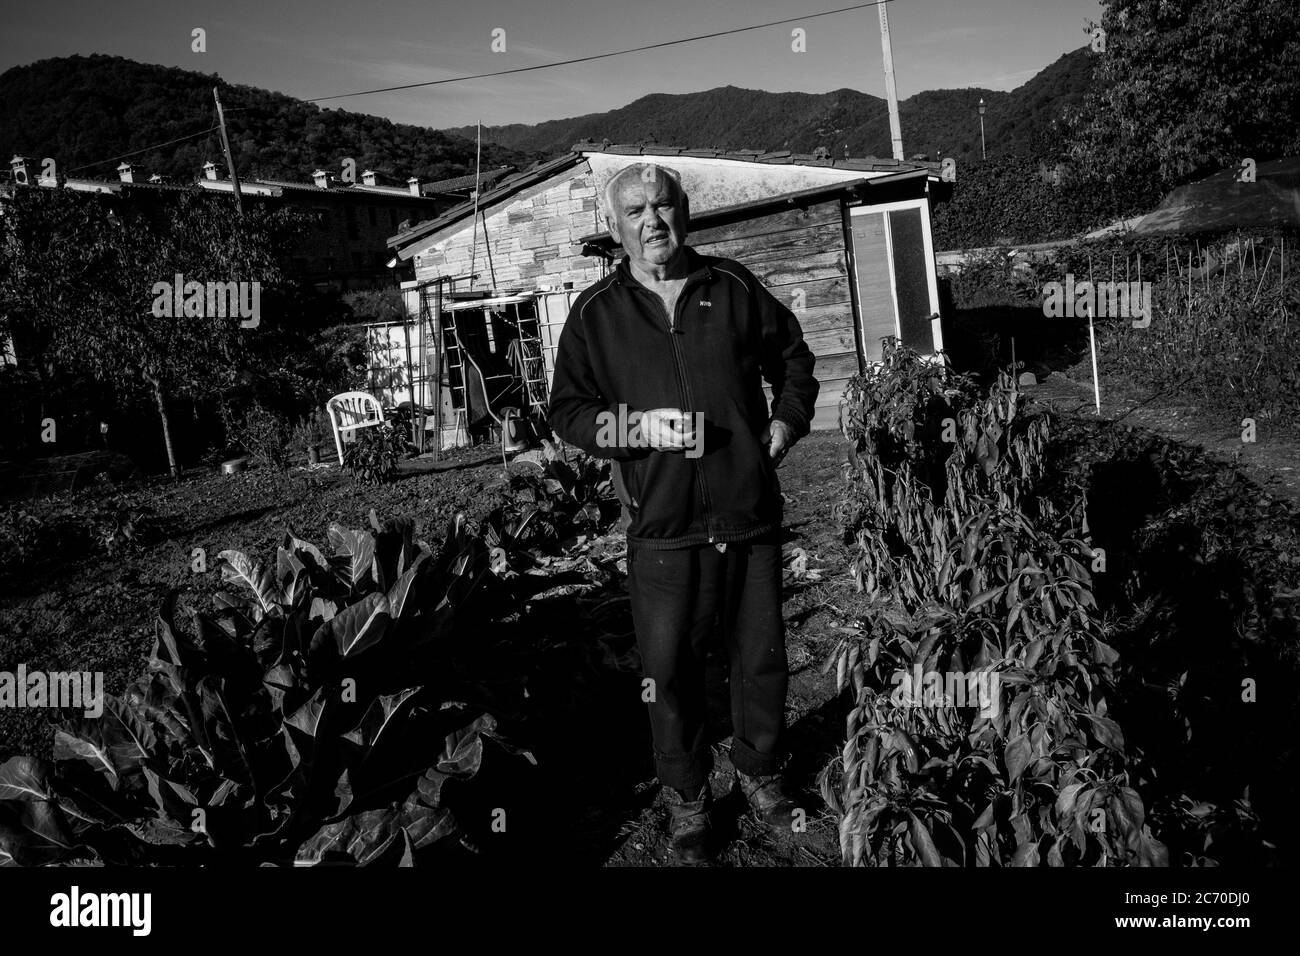 Jose Carrillo, 75 anni, si ritirò, ritratto nella sua cerchiatura vegetale a Riudaura, Spagna (Catalogna). Data: 28/10/2017. Data: Xabier Mikel Laburu. Jose è uno dei pochi abitanti del villaggio che si sentono spagnoli. Originario di Campanillas (Malaga), arrivò a Riudaura quando 6 anni dopo l'esilio del padre dopo la guerra civile spagnola. A casa dice che non parlano mai di politica o di calcio a casa, poiché entrambi i suoi figli sono indipendenti, ma a parte questo, ha vissuto con le sue idee politiche senza problemi nel villaggio. Foto Stock